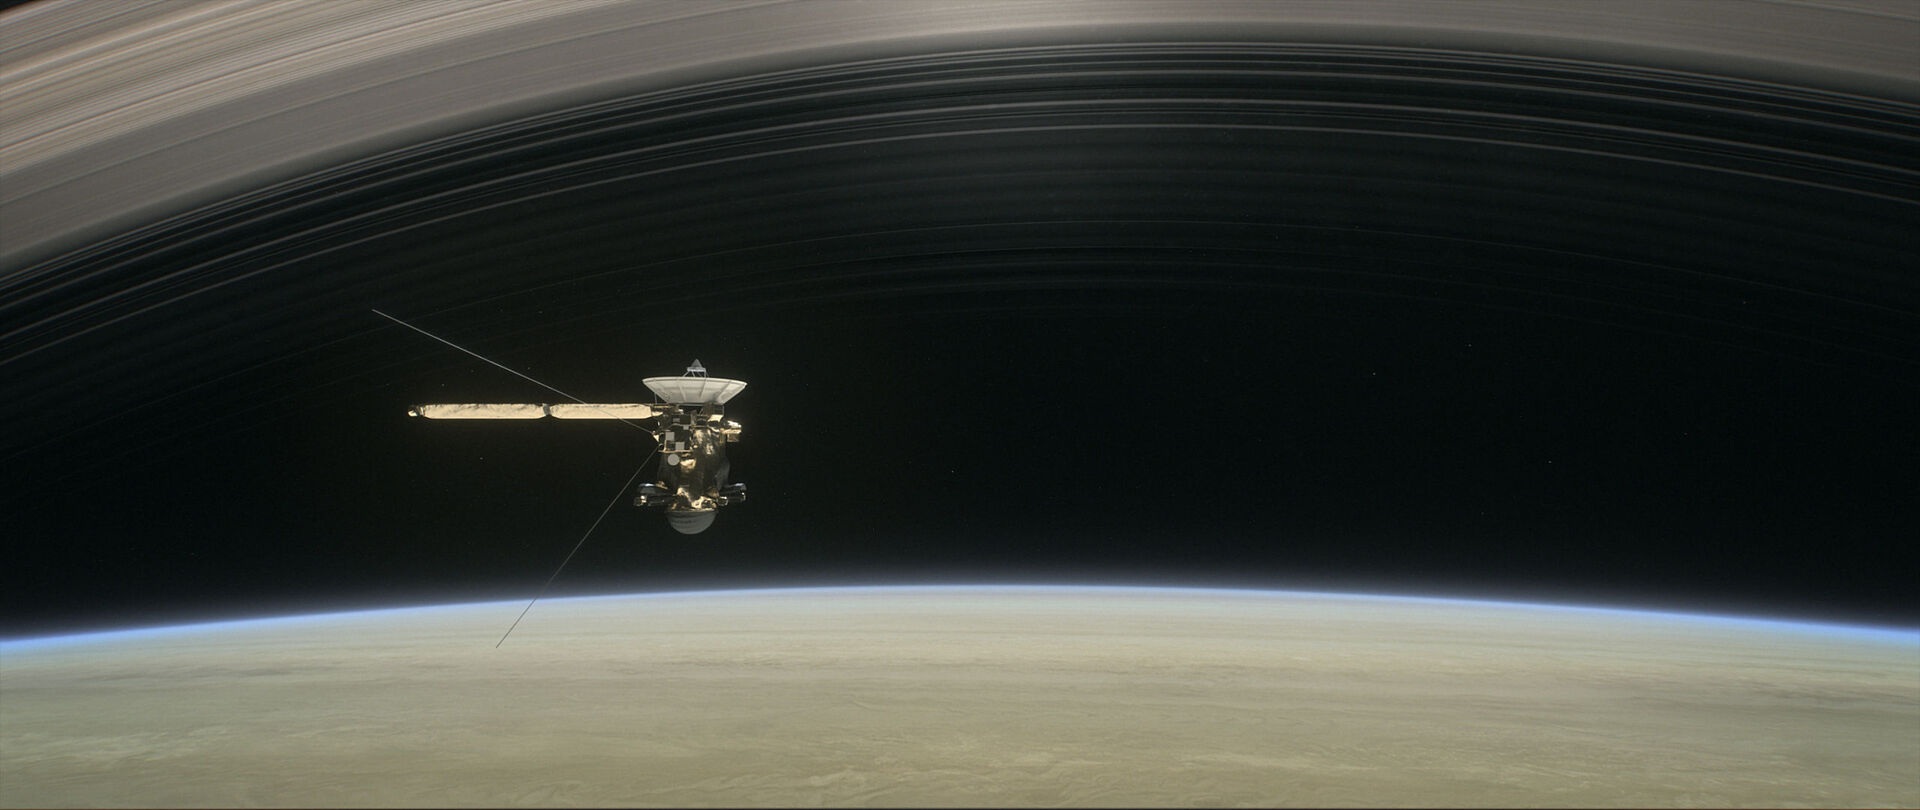 Vesmír - sonda Cassini nad Saturnem